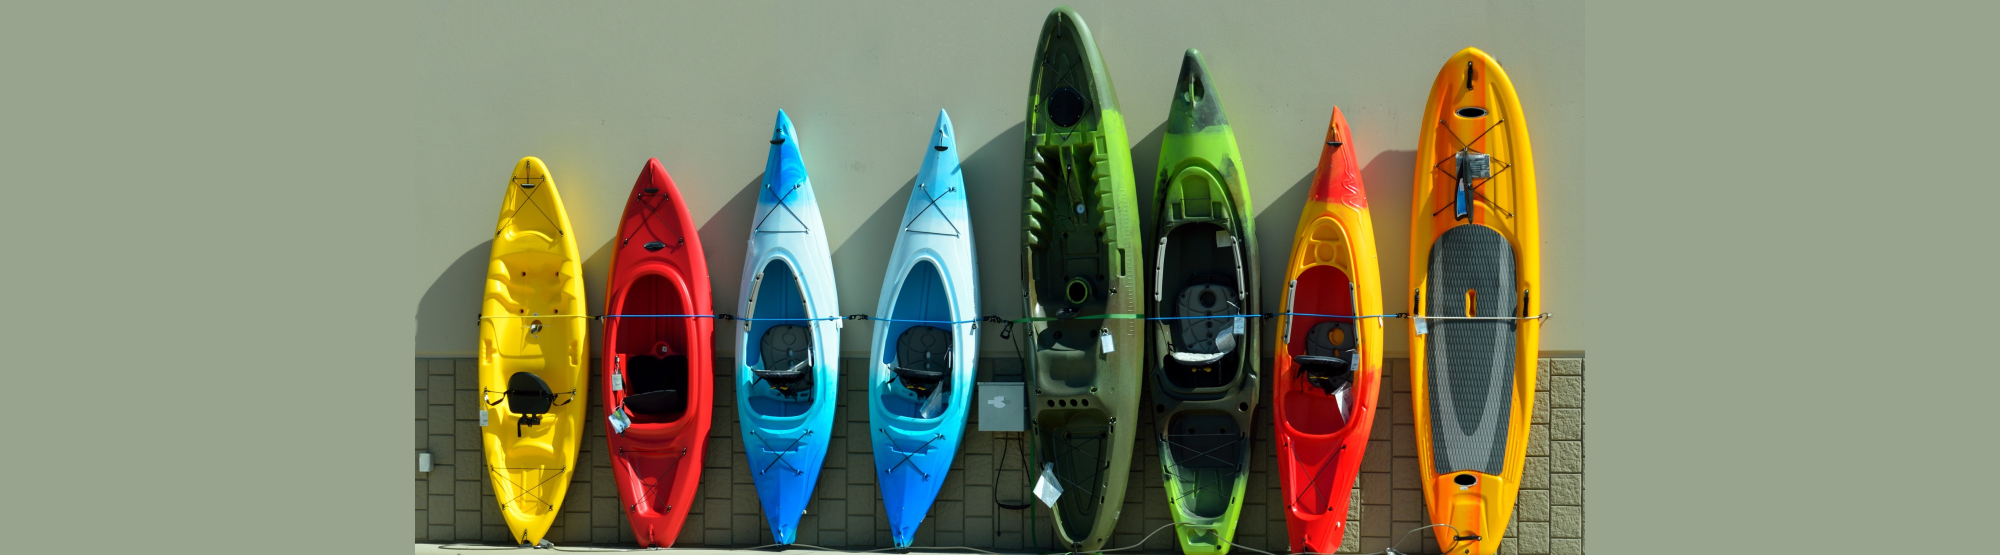 Kayaks at State Storage